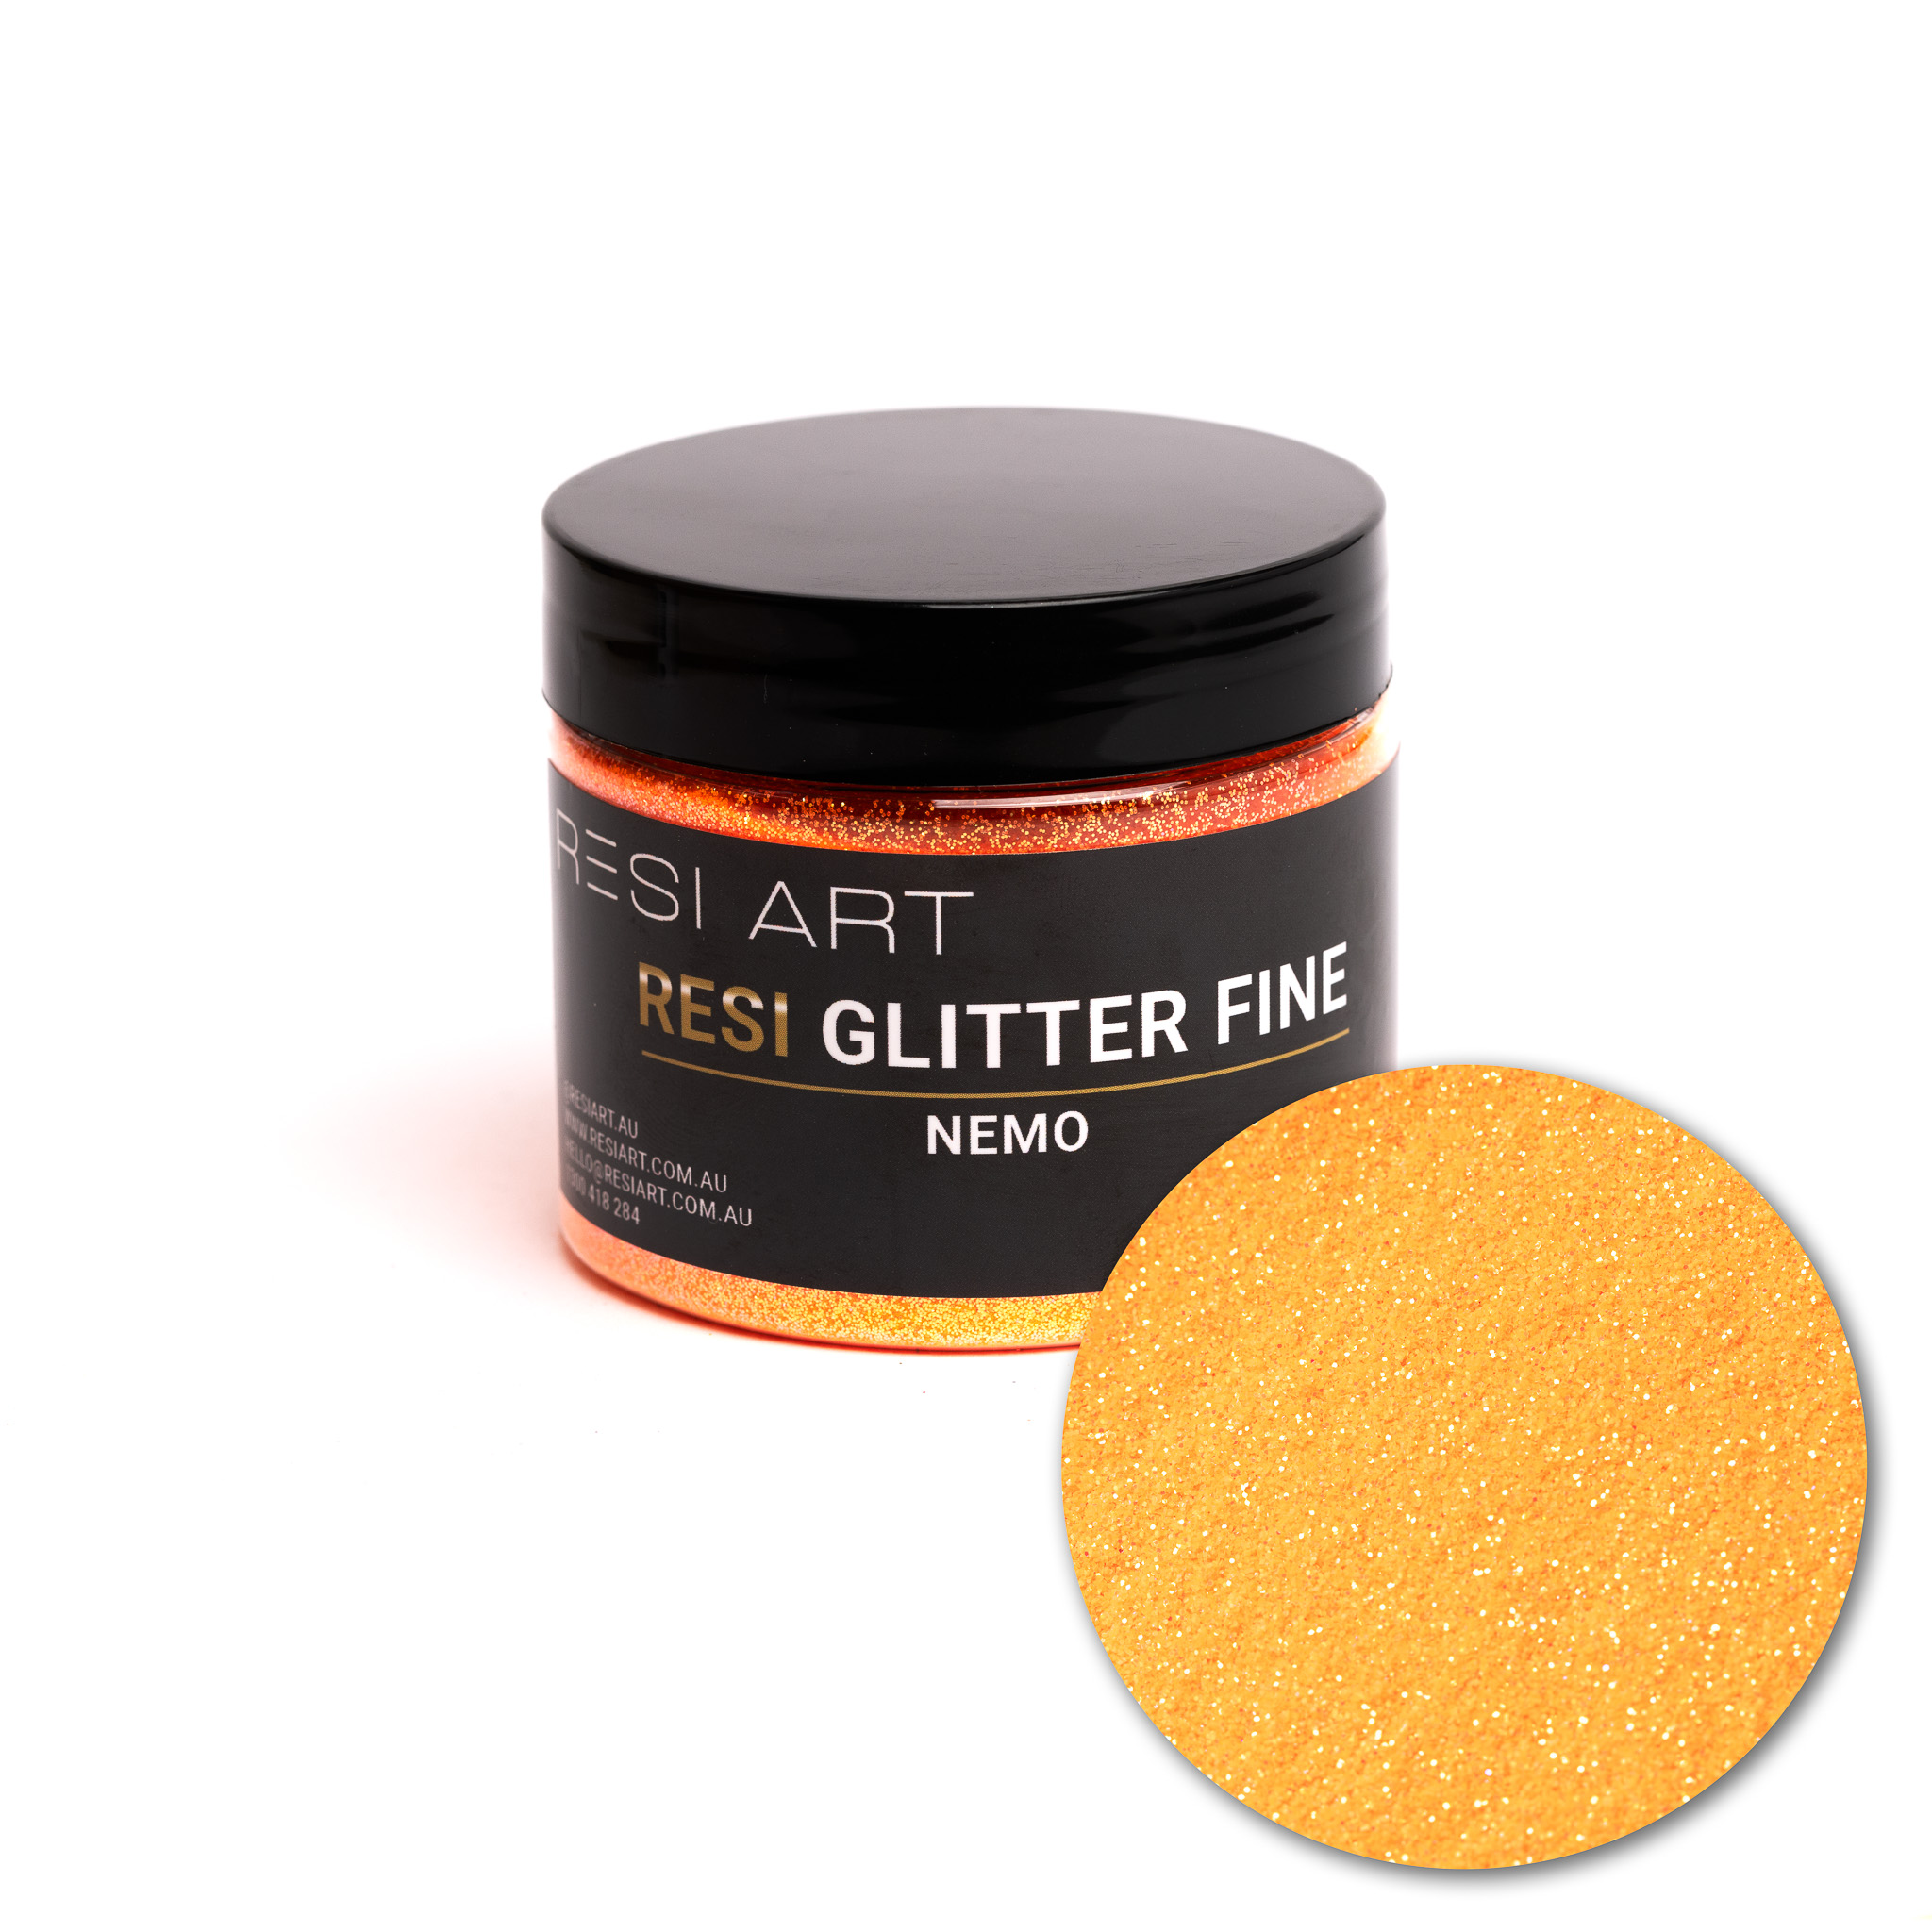 Nemo 100g - Resi Glitter Fine